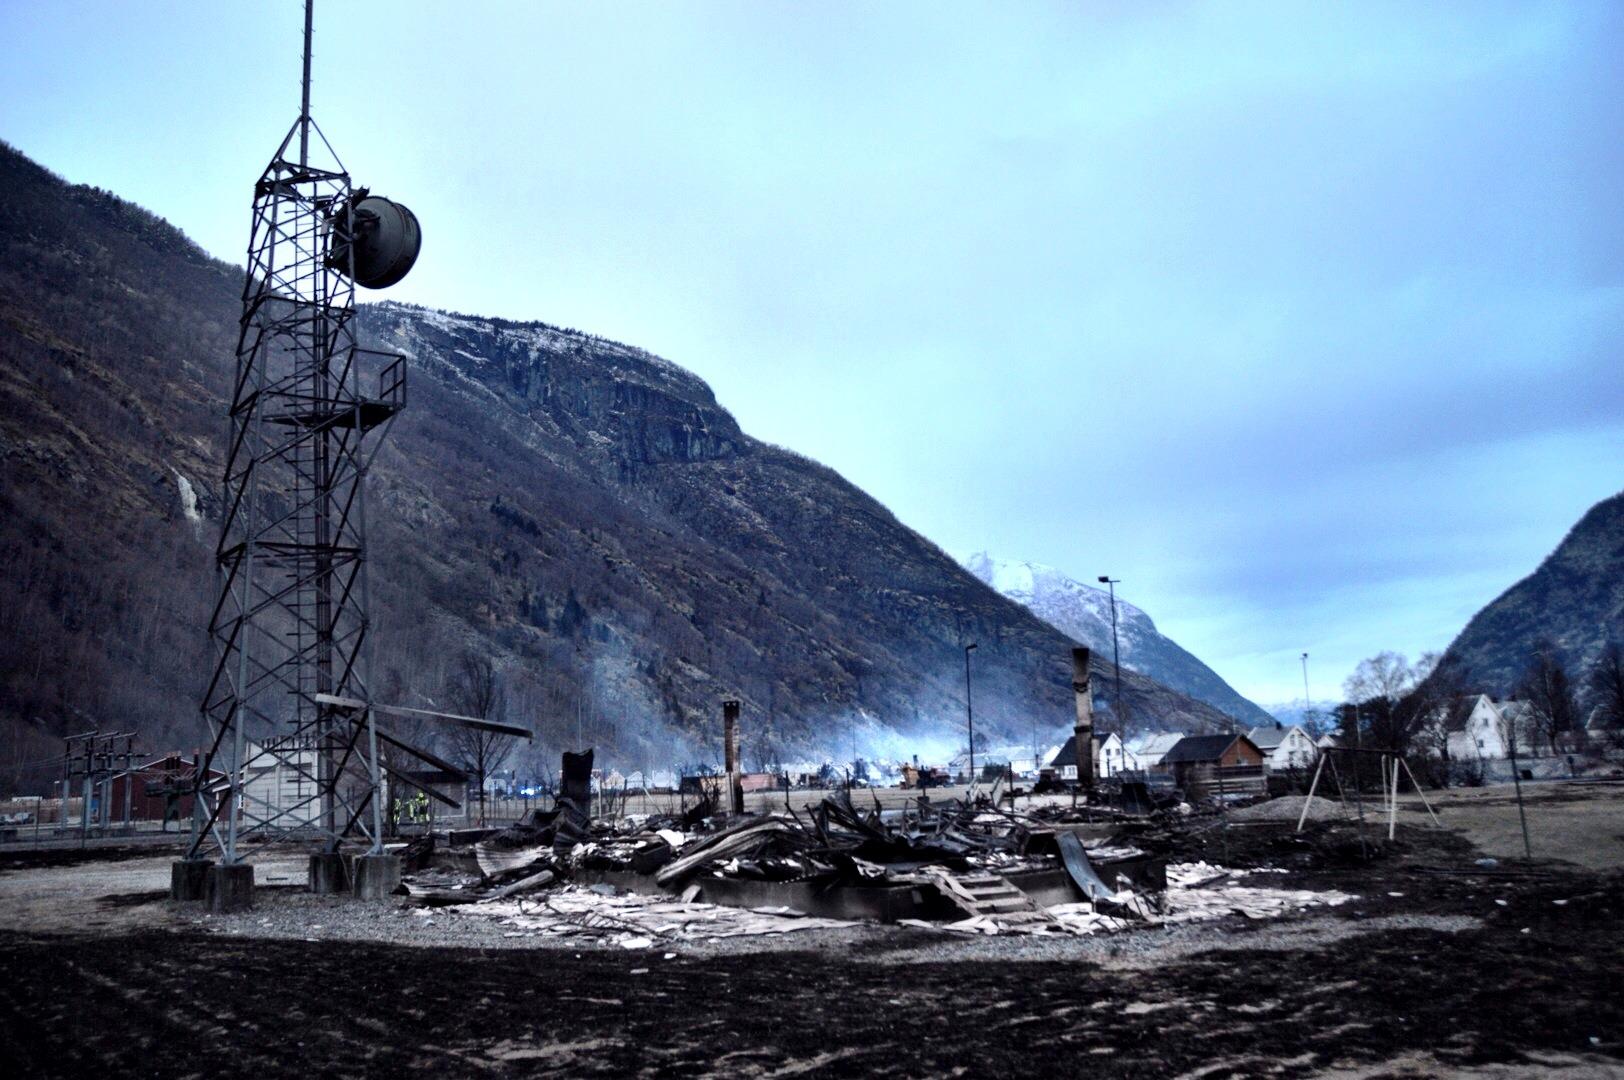 På denne branntomta i Lærdalsøyri måtte Telenors teknikere reparere flere tusen utbrente og ødelagte kabler. Foto: Telenor